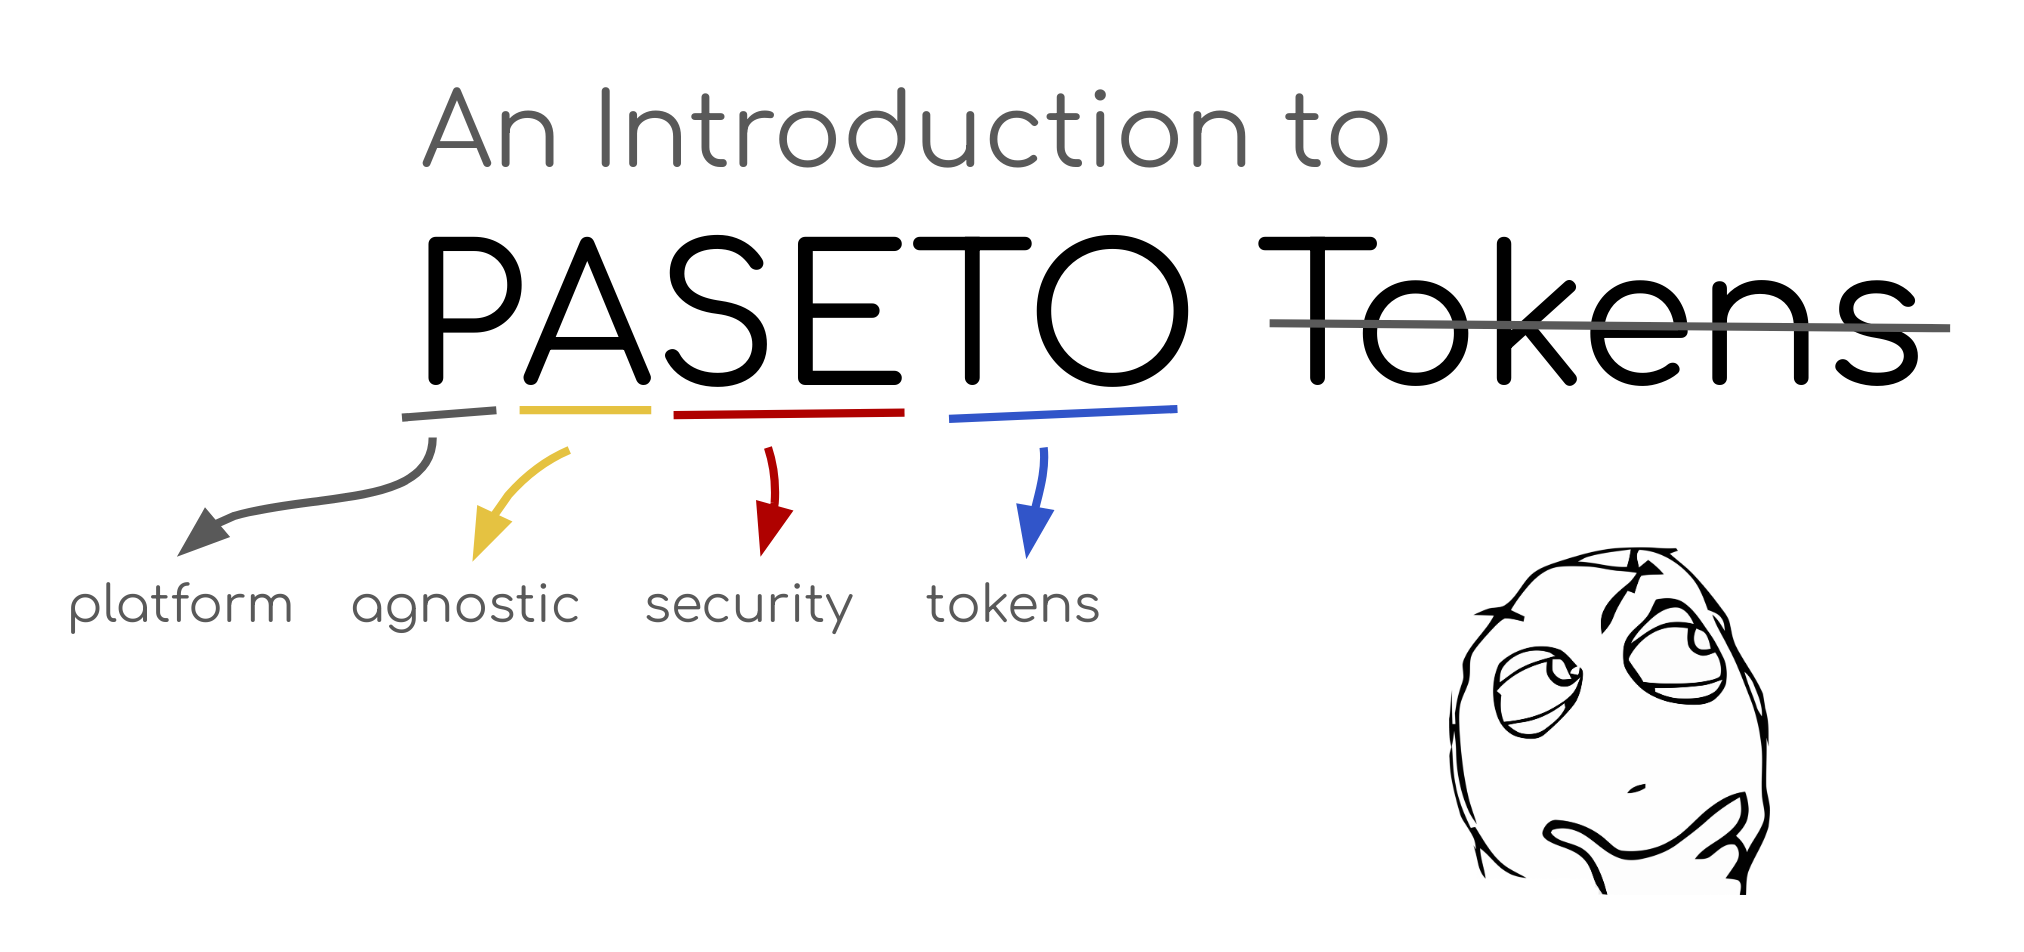 A Thorough Introduction to PASETO